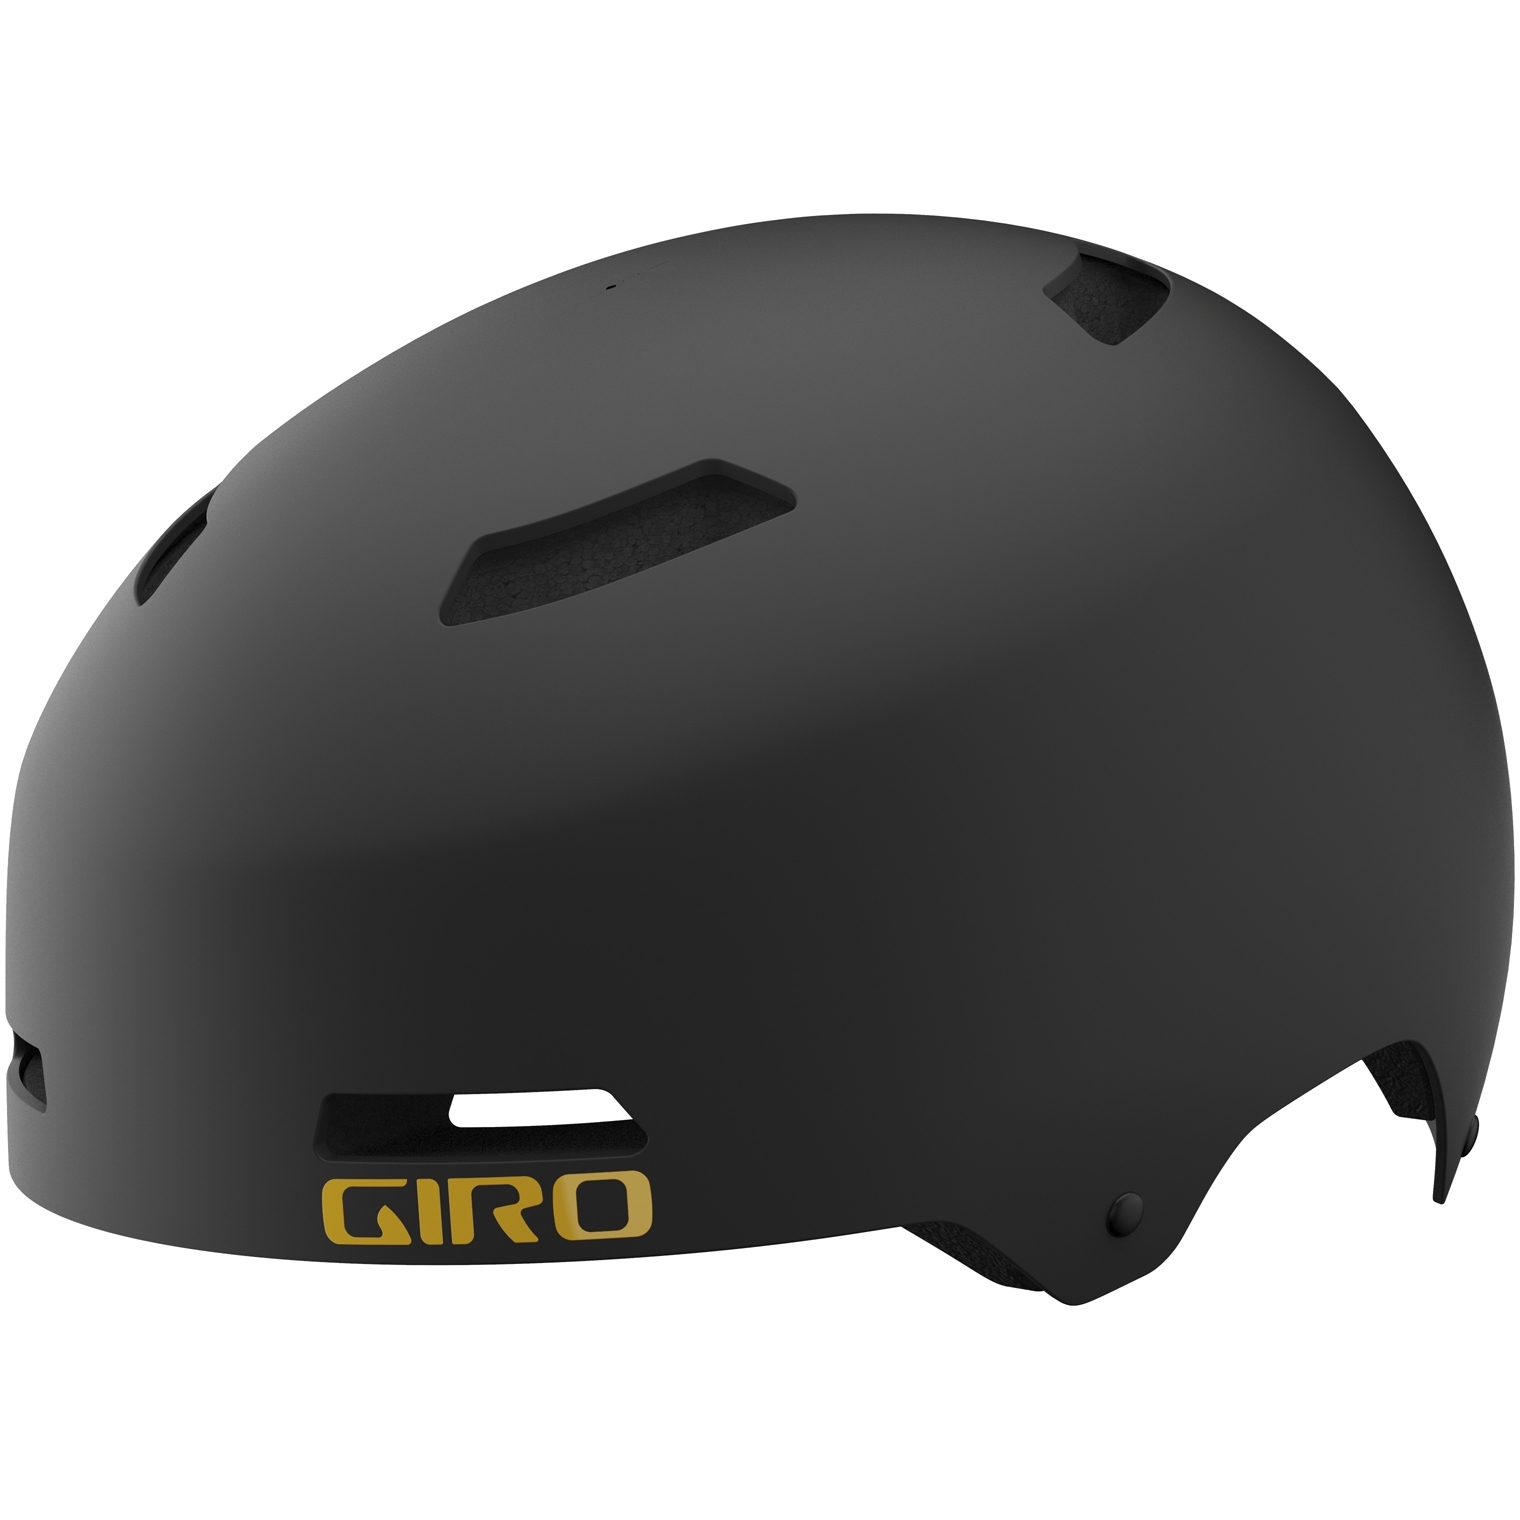 Produktbild von Giro Quarter FS Helm - matte warm black